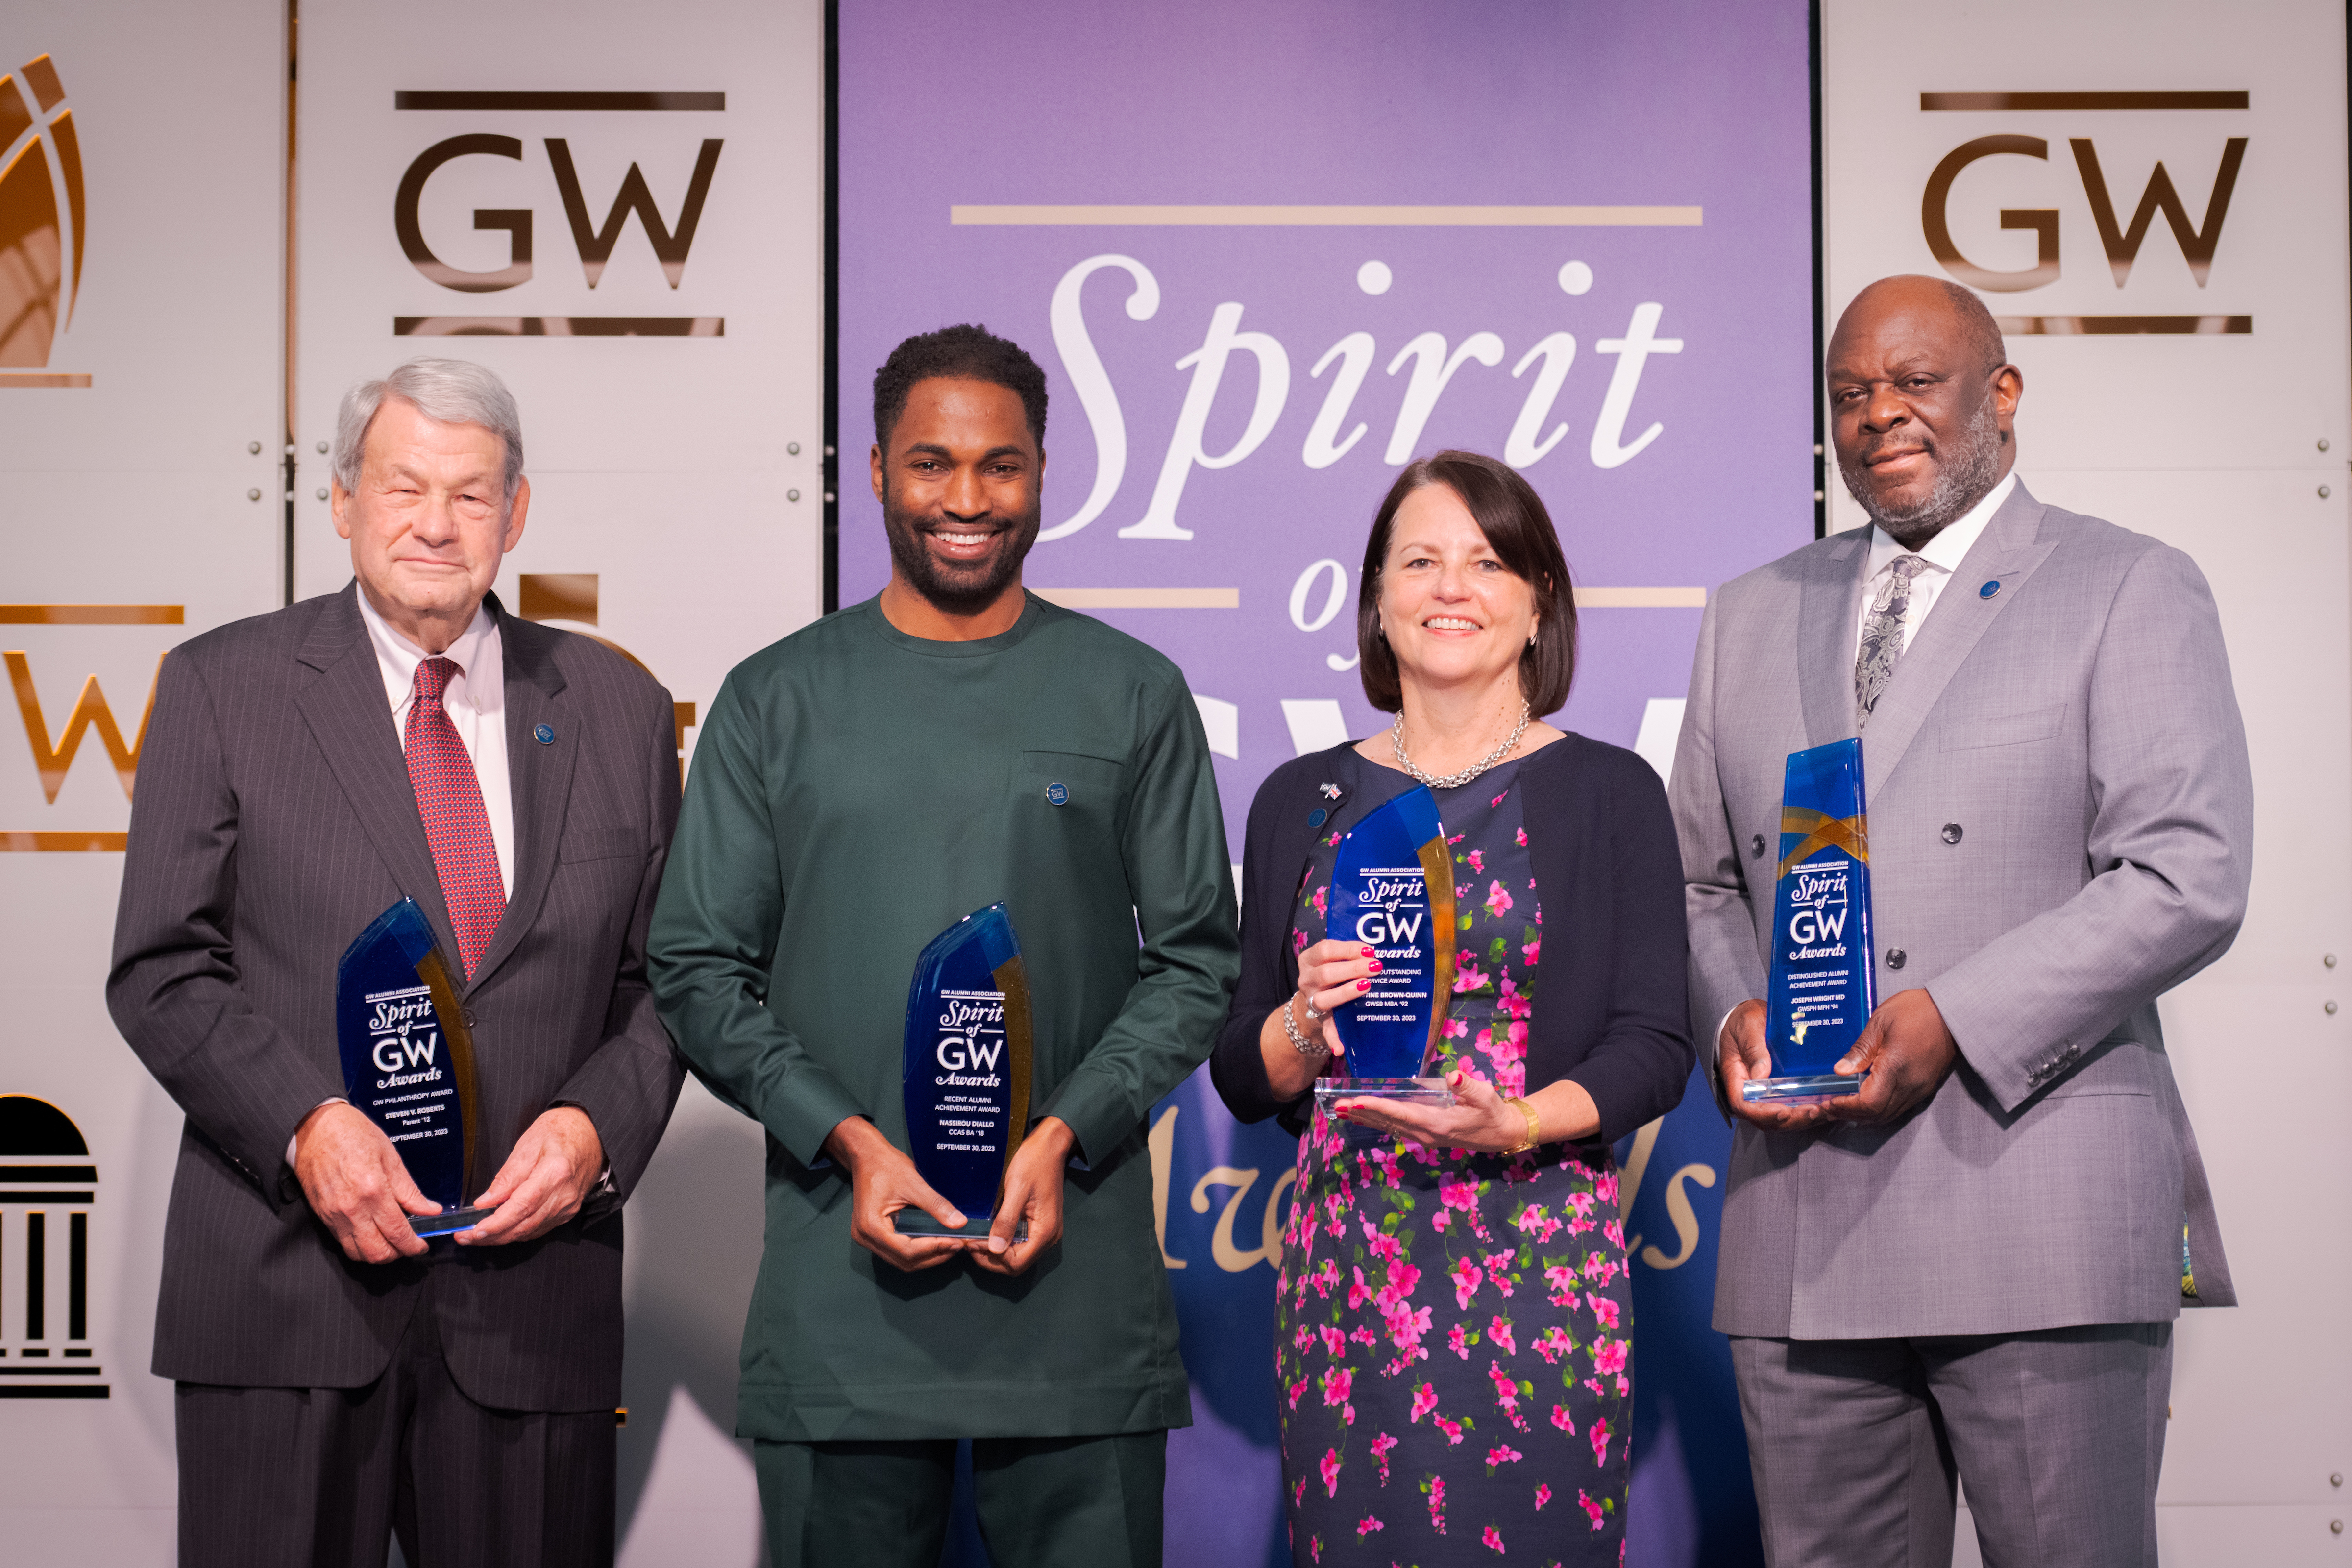 Spirit of GW awards